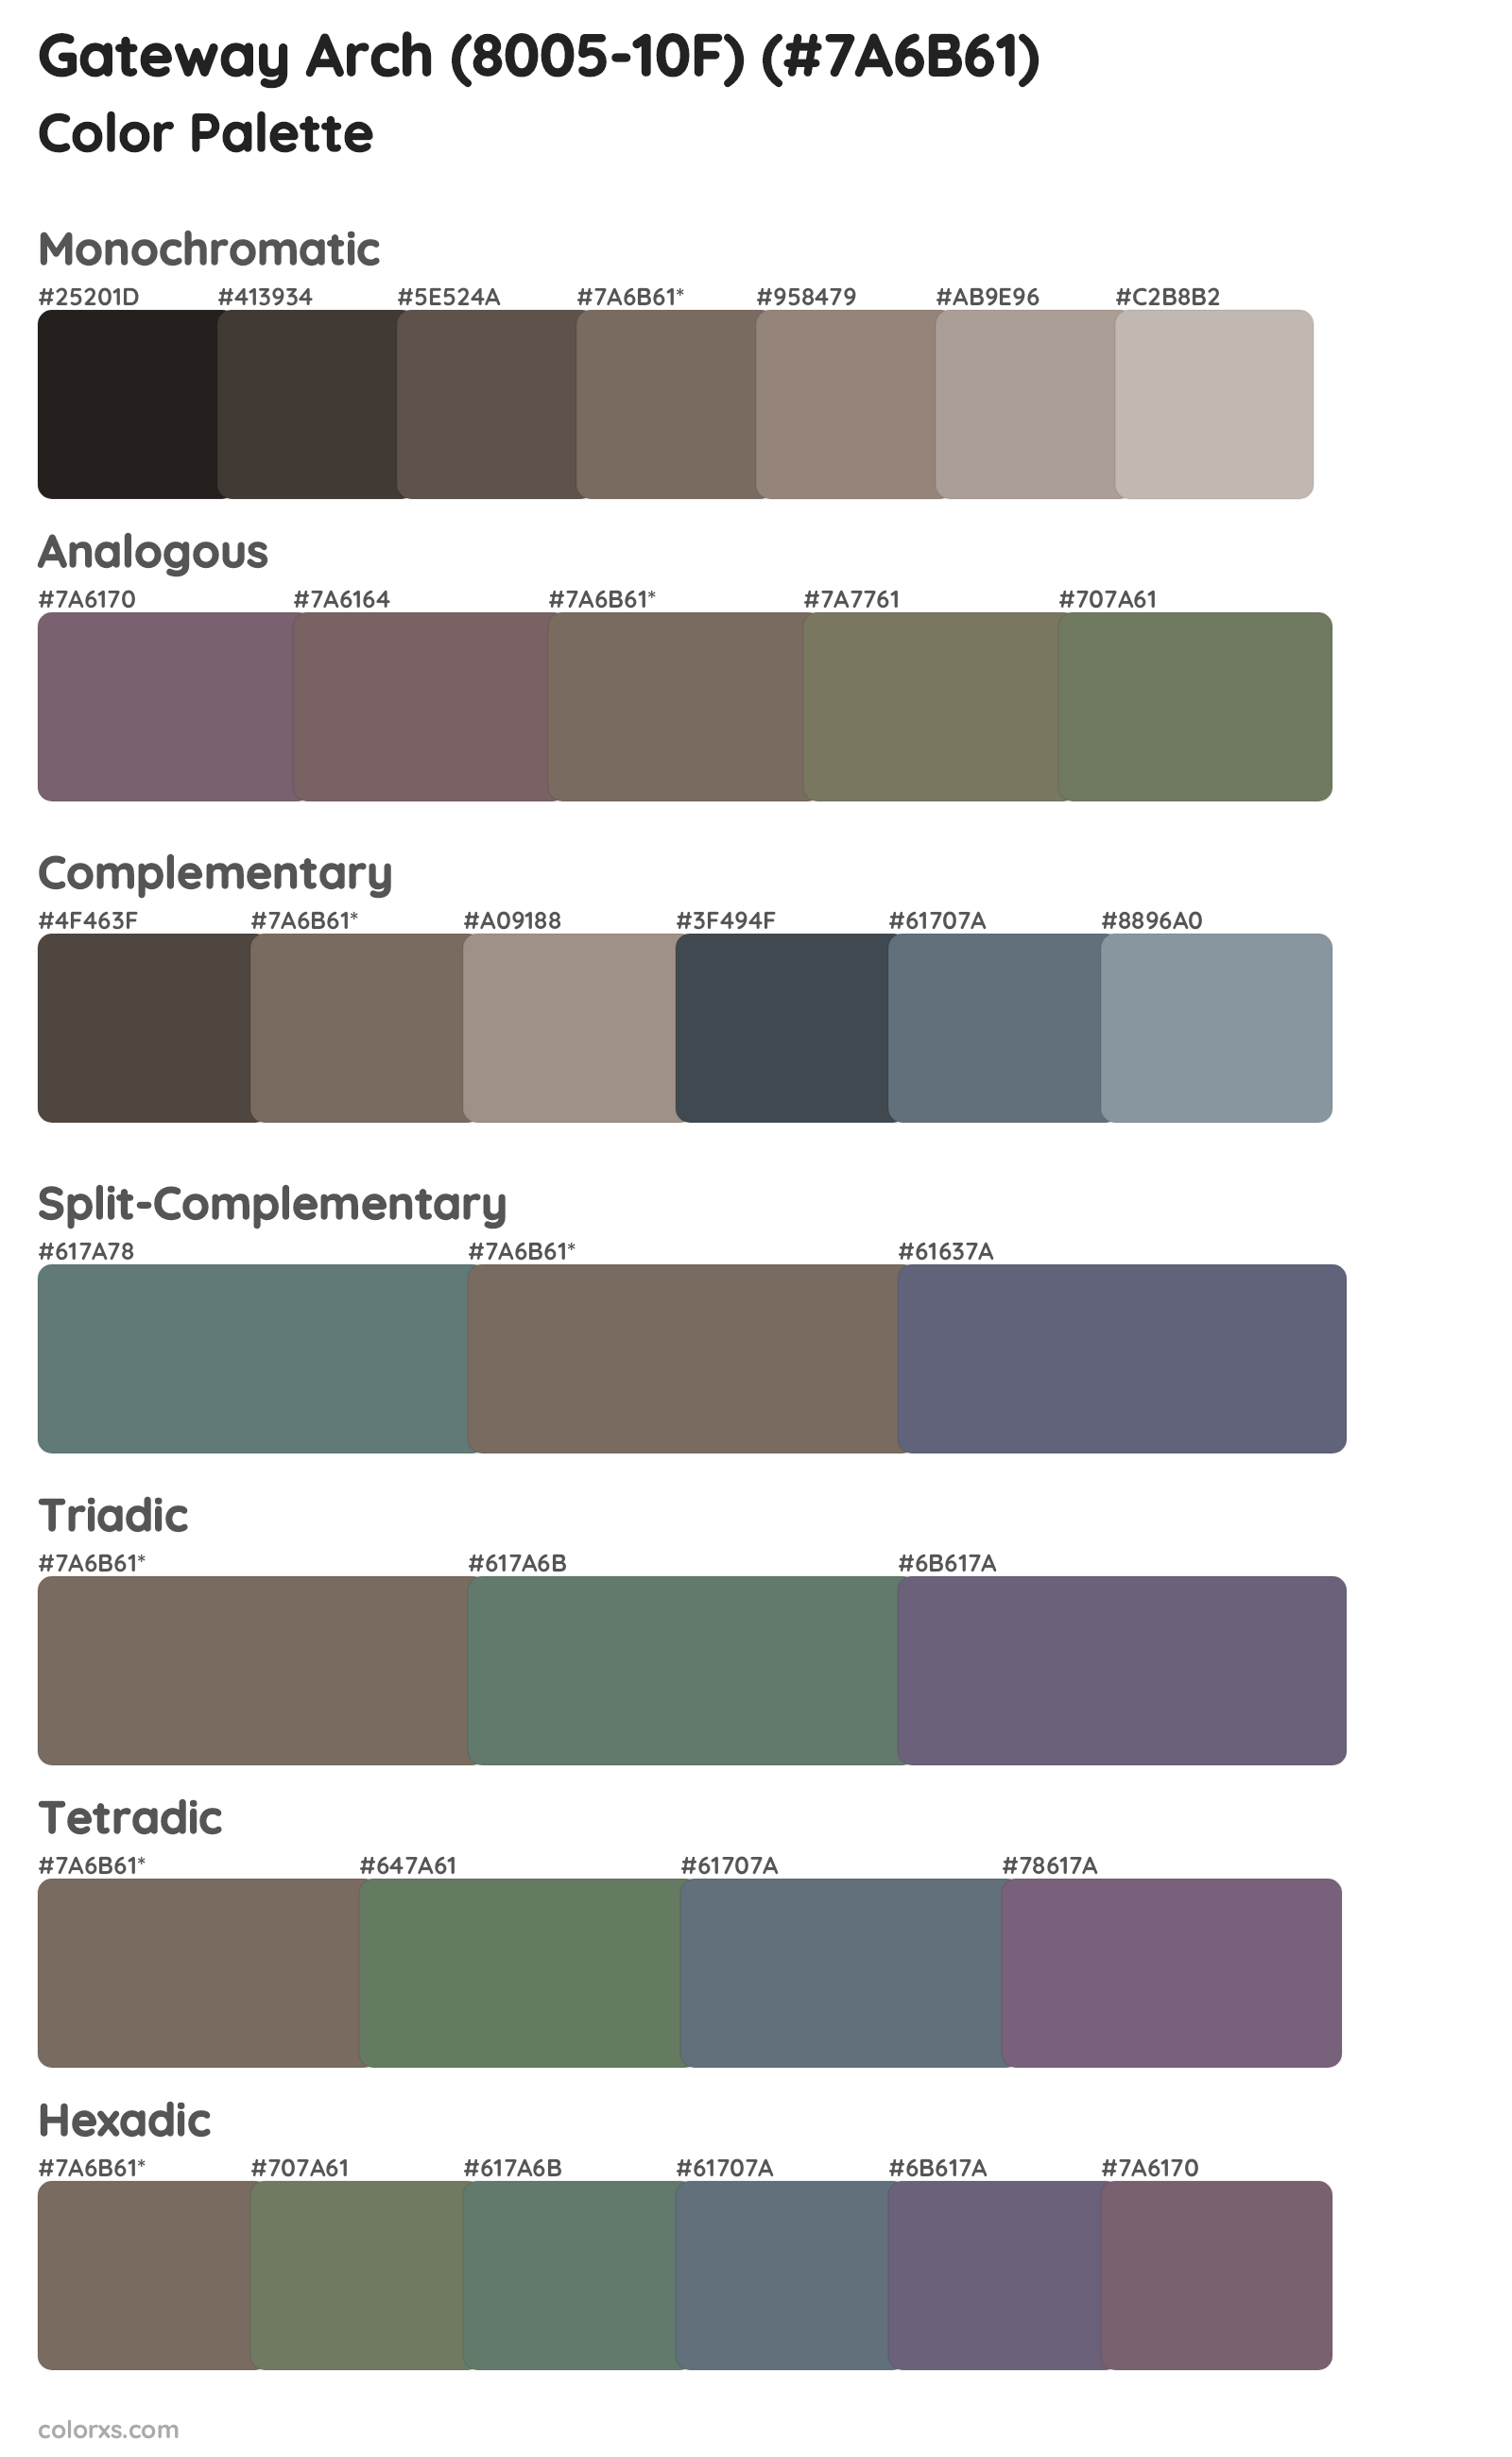 Gateway Arch (8005-10F) Color Scheme Palettes